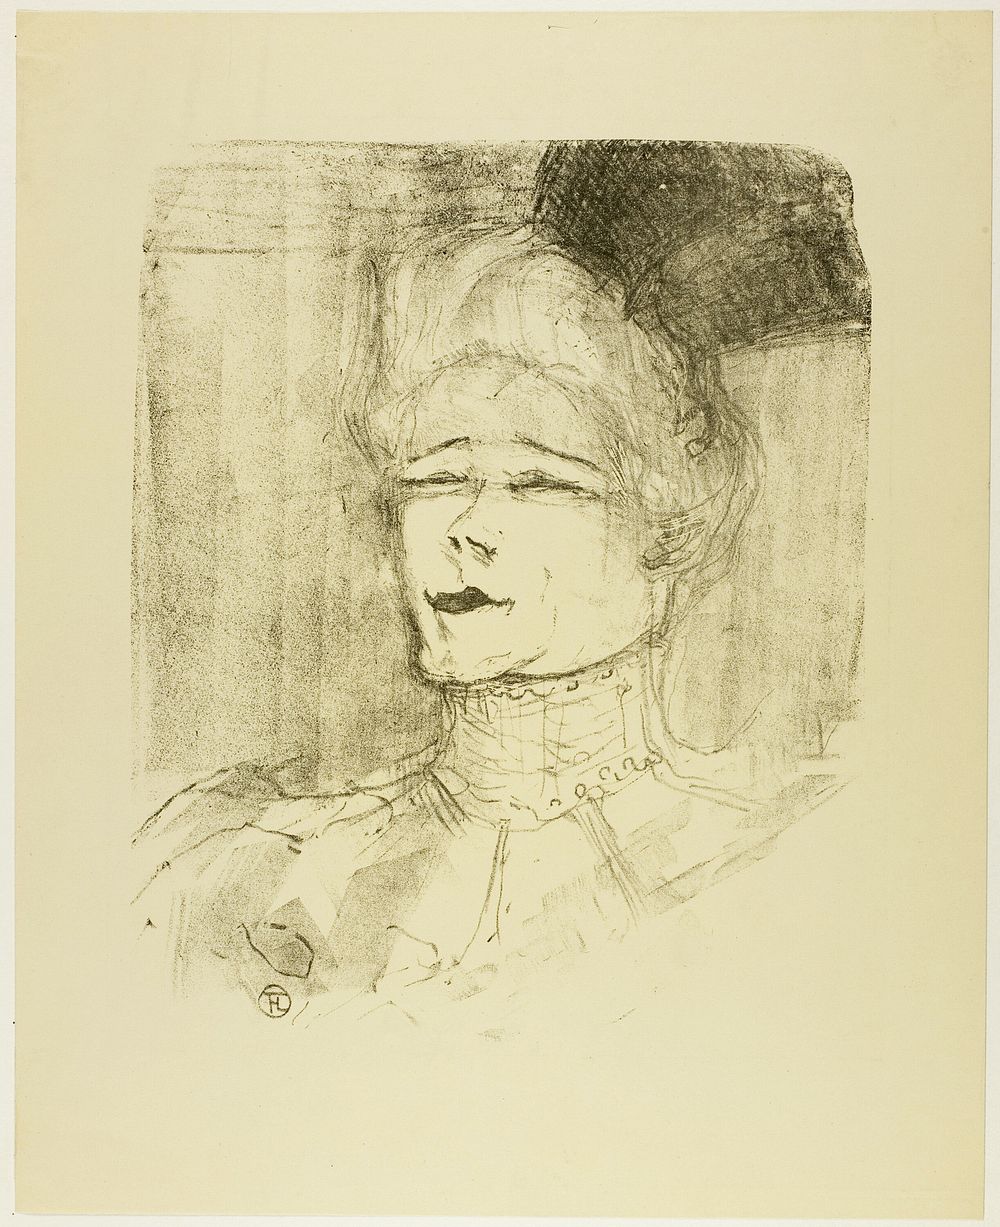 Jeanne Granier, from Treize Lithographies by Henri de Toulouse-Lautrec